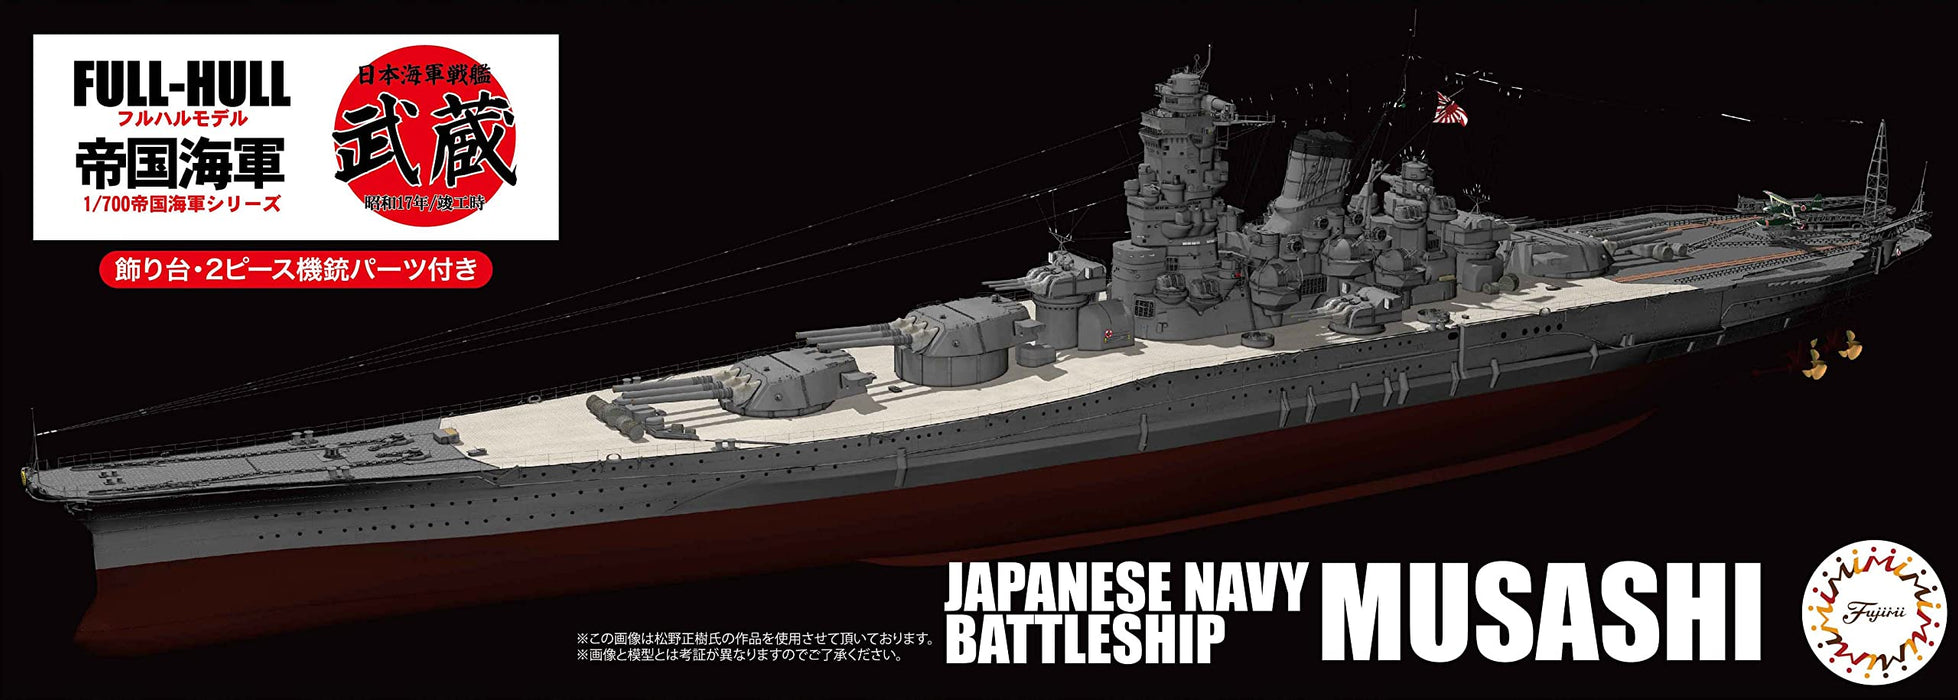 Fujimi Model 1/700 Japanese Navy Battleship Musashi 1942 Full Hull Model Fh-2